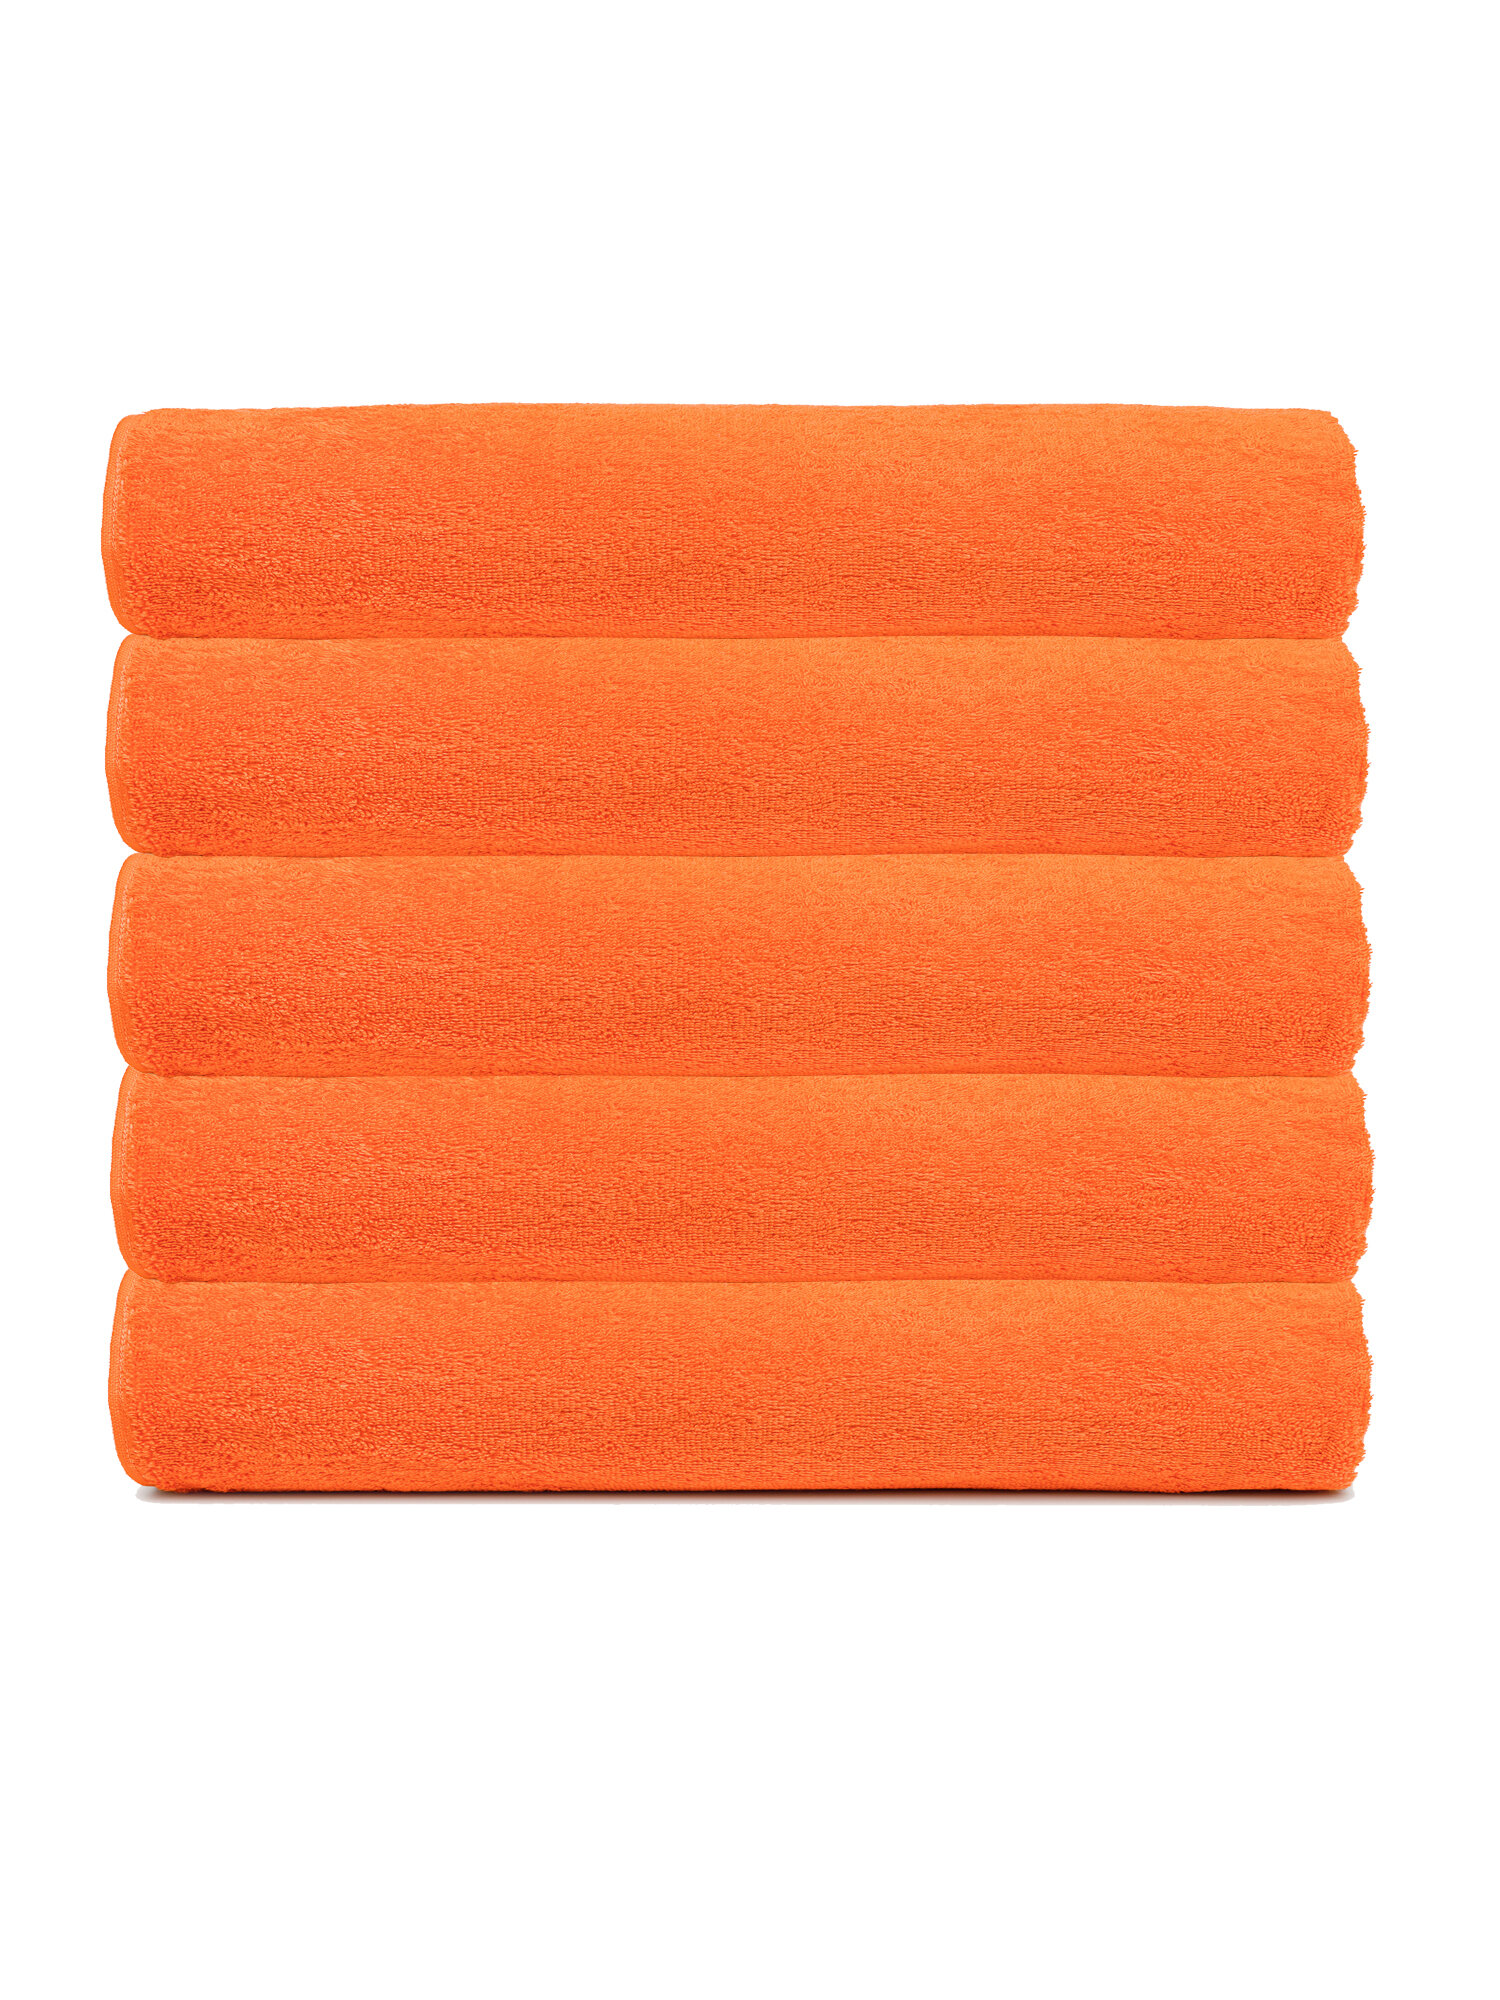 Набор полотенец 70х140 махровые банные TCStyle банные оранжевого цвета 5 шт. 470 гр/м2